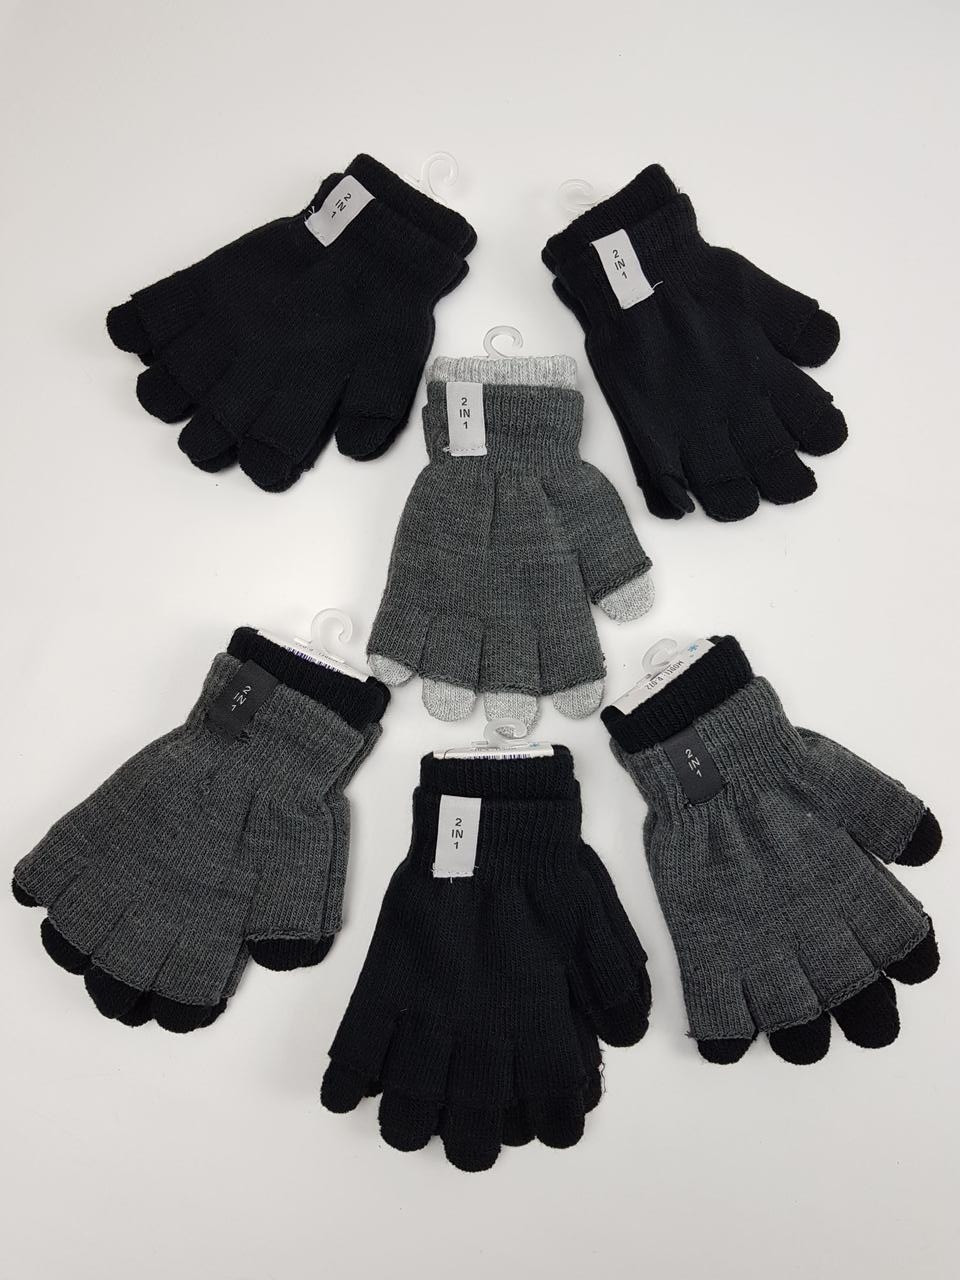 Детские польские перчатки для мальчиков р. 16 см (9-10 л) (6 шт. набор)